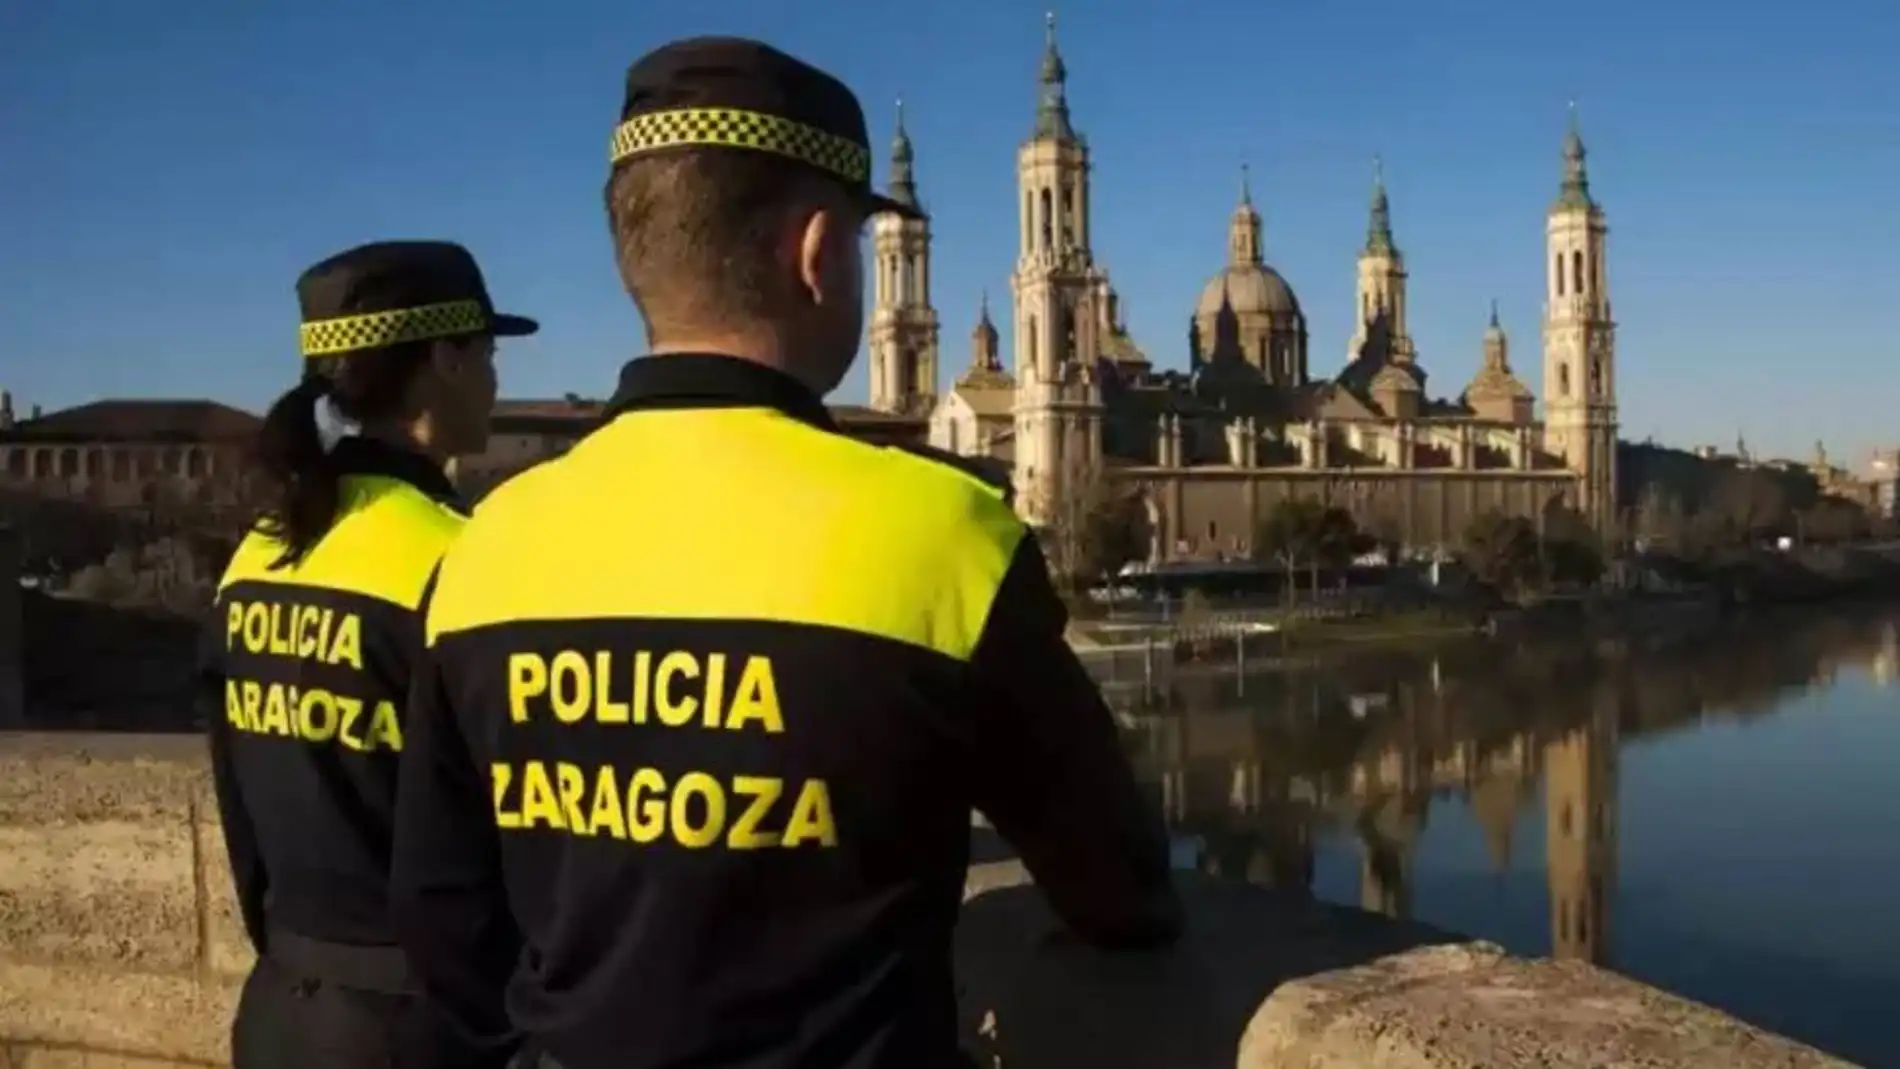 Policia local Zaragoza